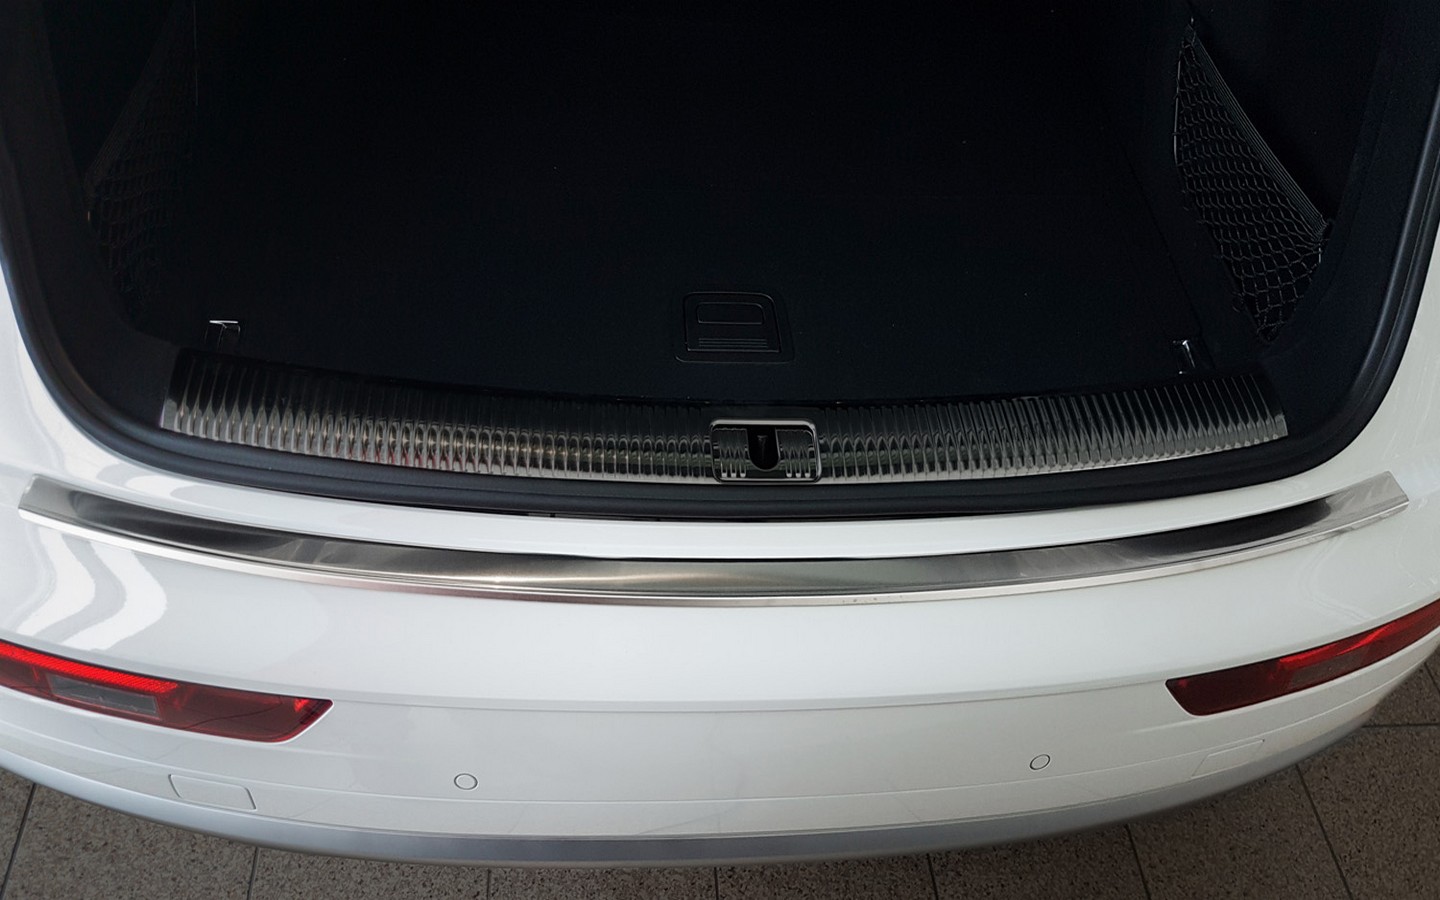 Ladekantenschutz für Audi Q5 SQ5 - Schutz für die Ladekante Ihres Fahrzeuges